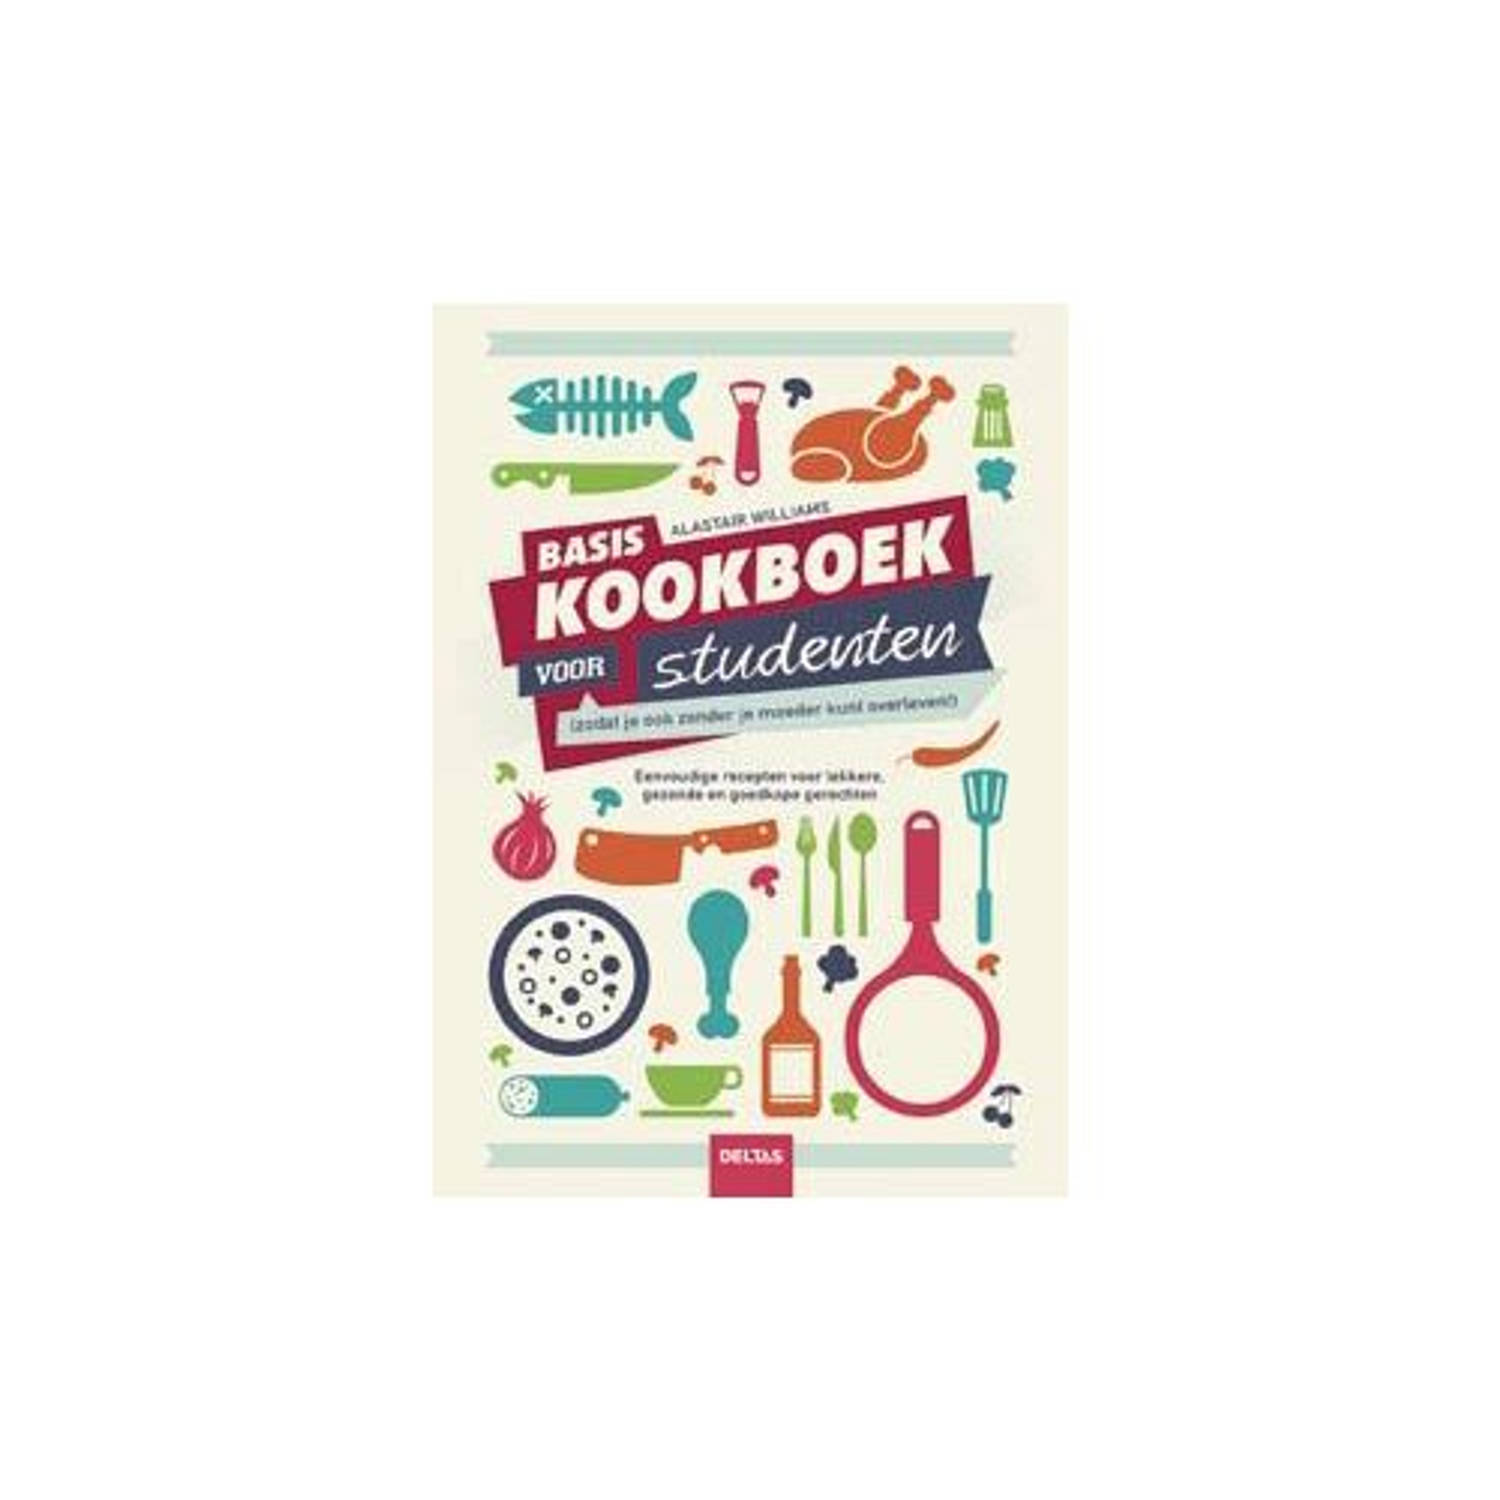 Paagman basiskookboek voor studenten